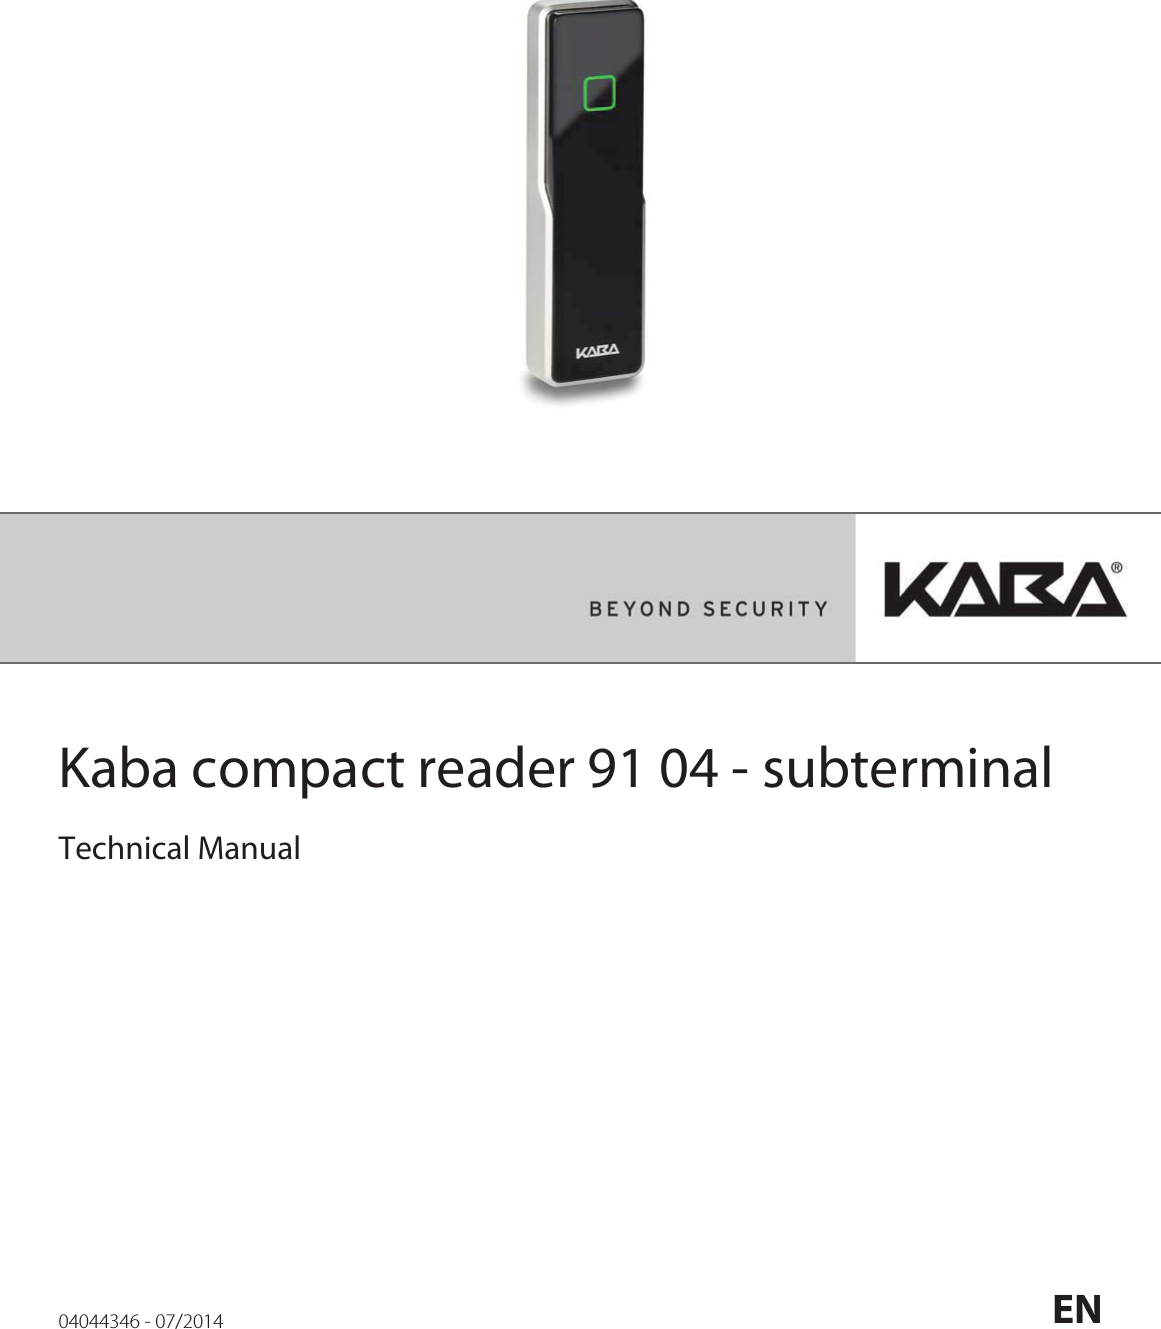                 Kaba compact reader 91 04 - subterminal         Technical Manual    04044346 - 07/2014  EN  